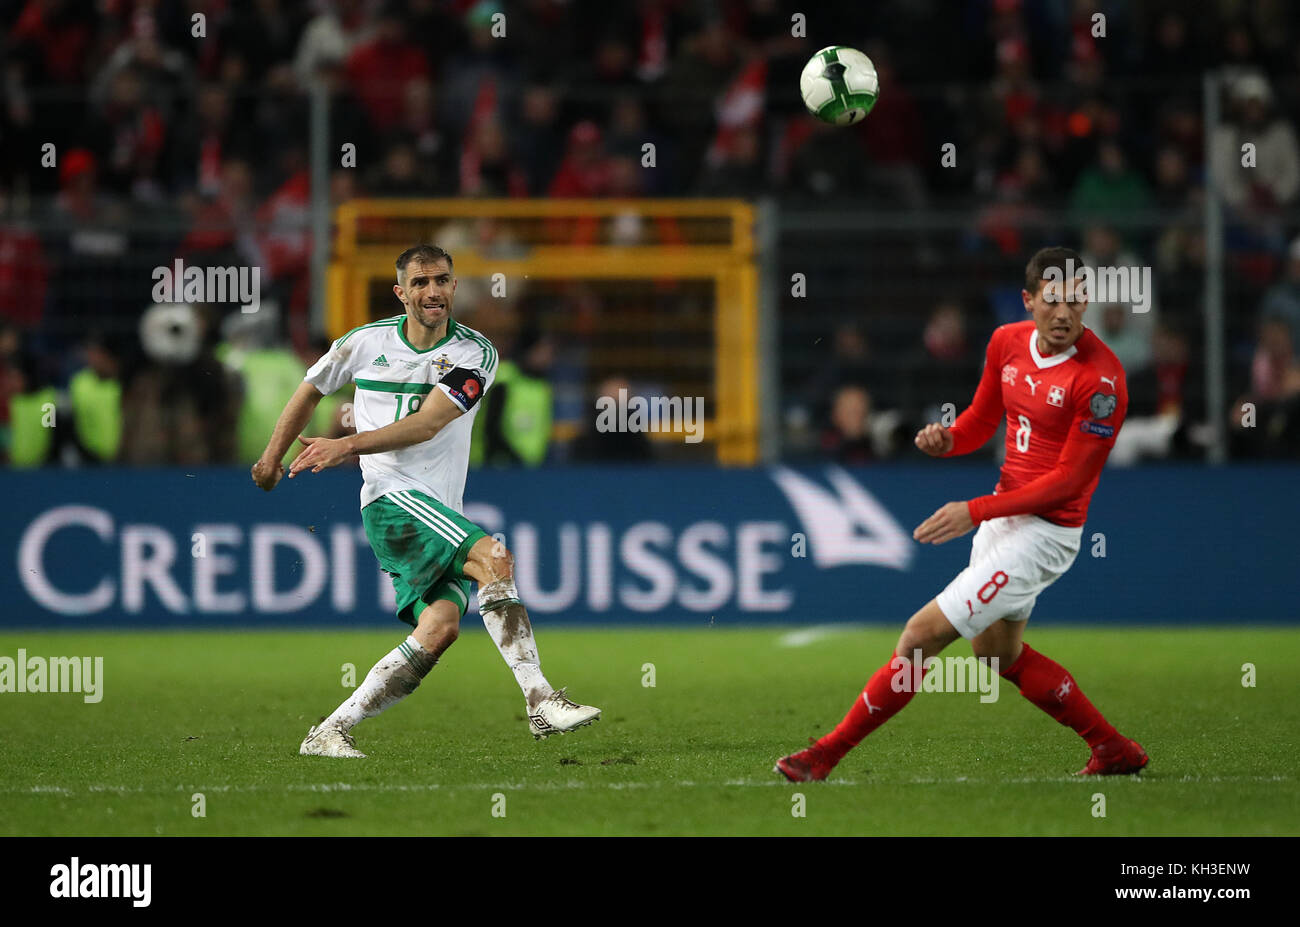 Irlanda del Norte aaron hughes (izquierda) y la suiza remo freuler en acción durante la Copa Mundial de la fifa clasificarse como segundo partido en st Jakob Park, Basilea. Foto de stock